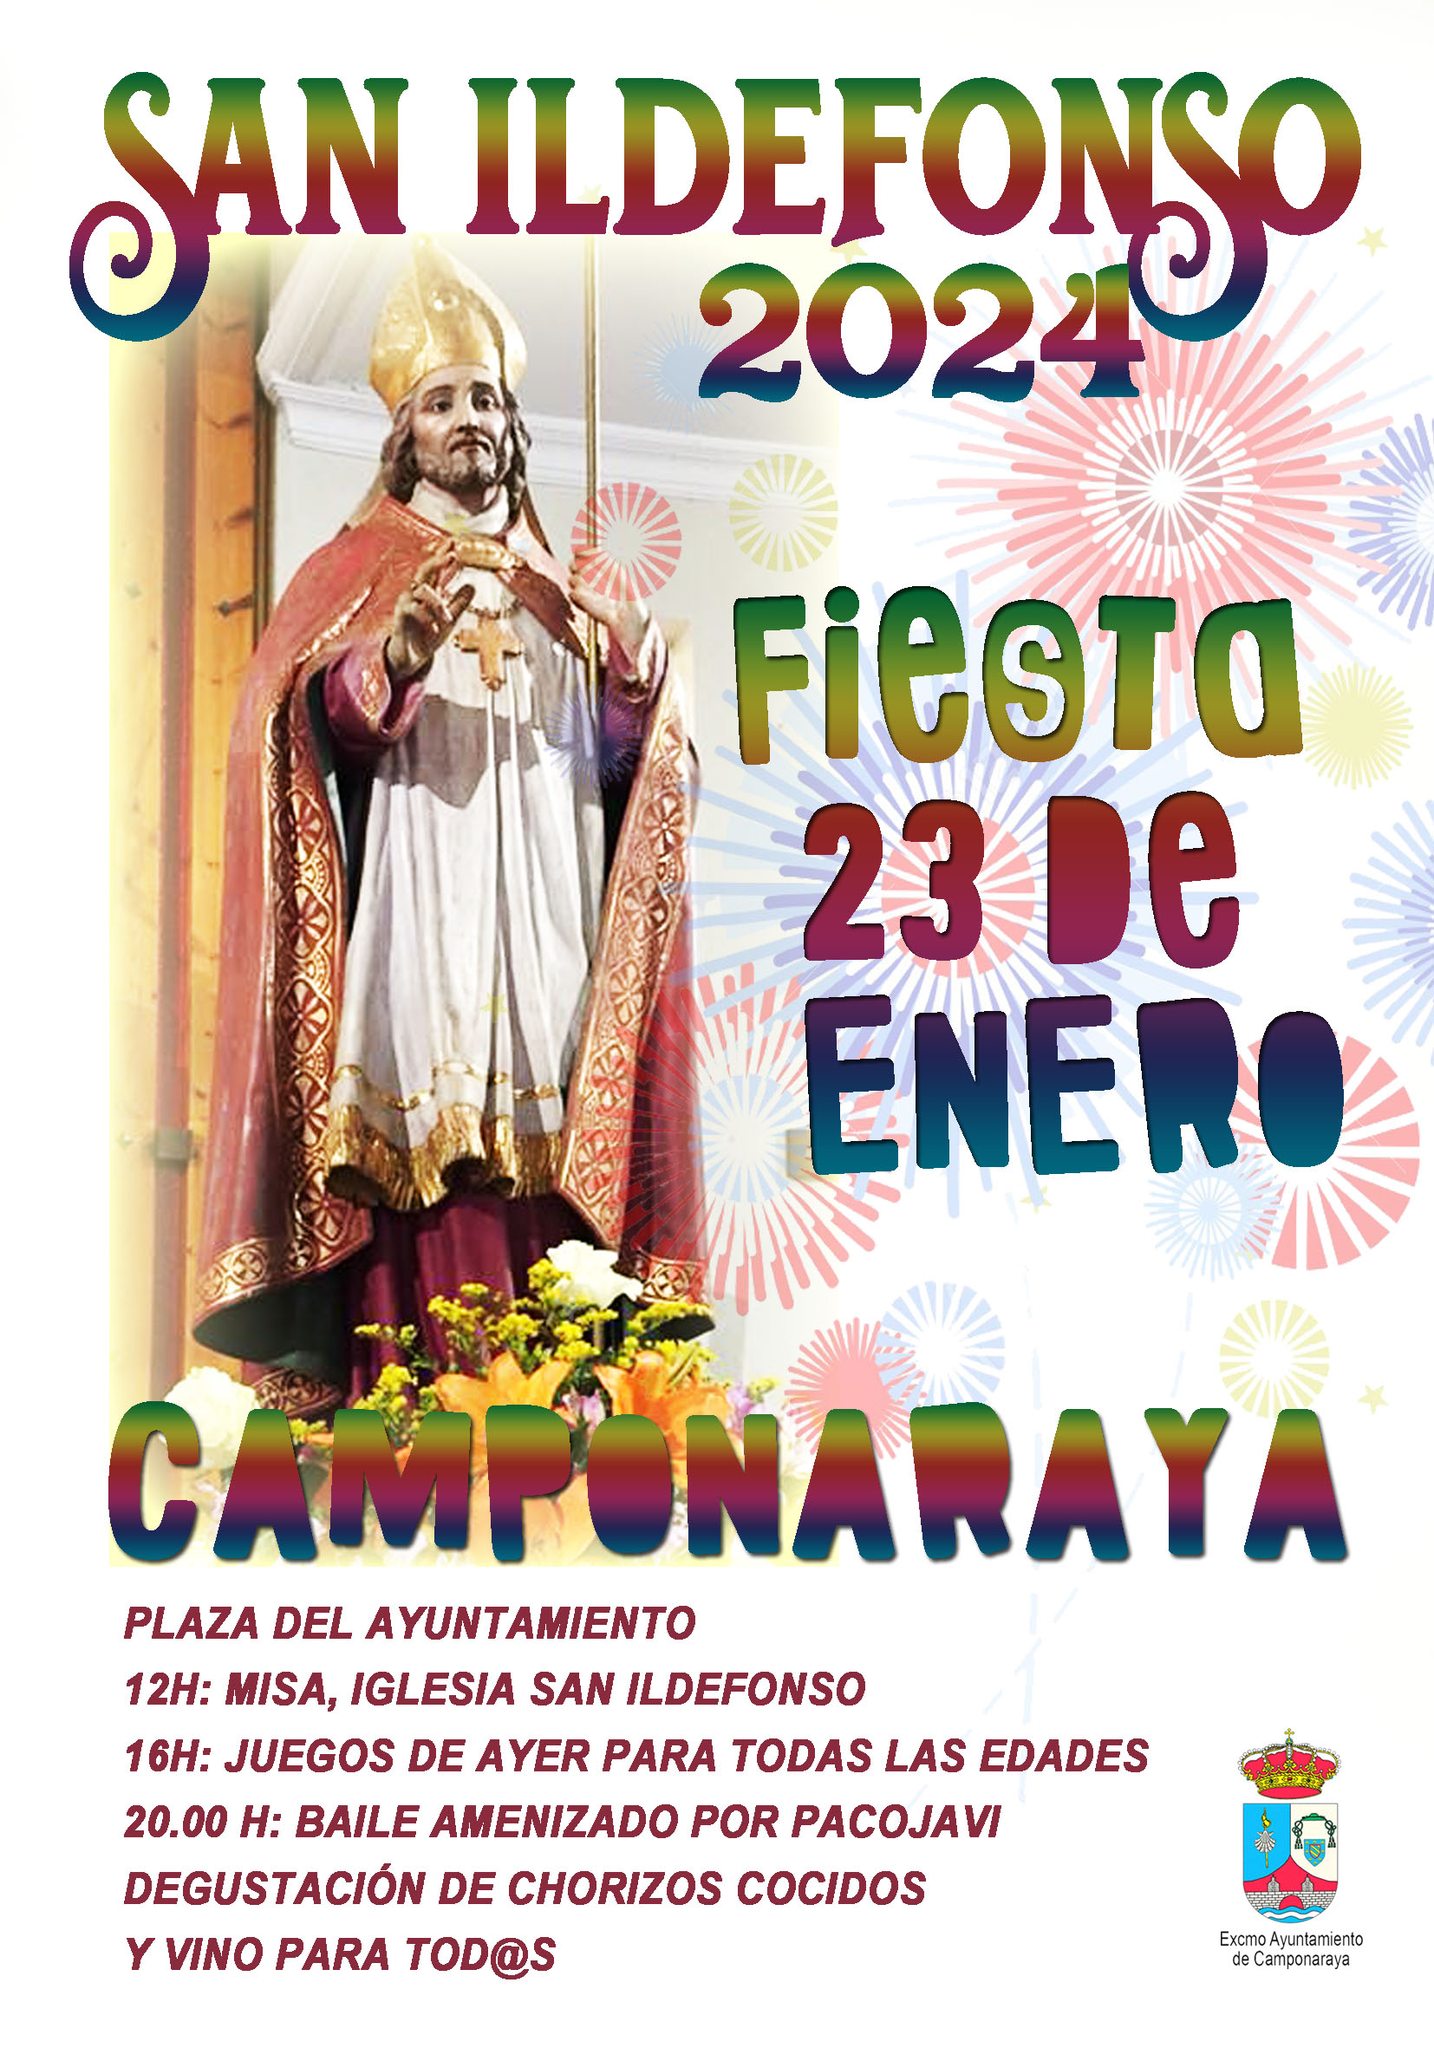 Camponaraya celebra San Ildefonso con misa, juegos y baile amenizado por Paco Javi 2